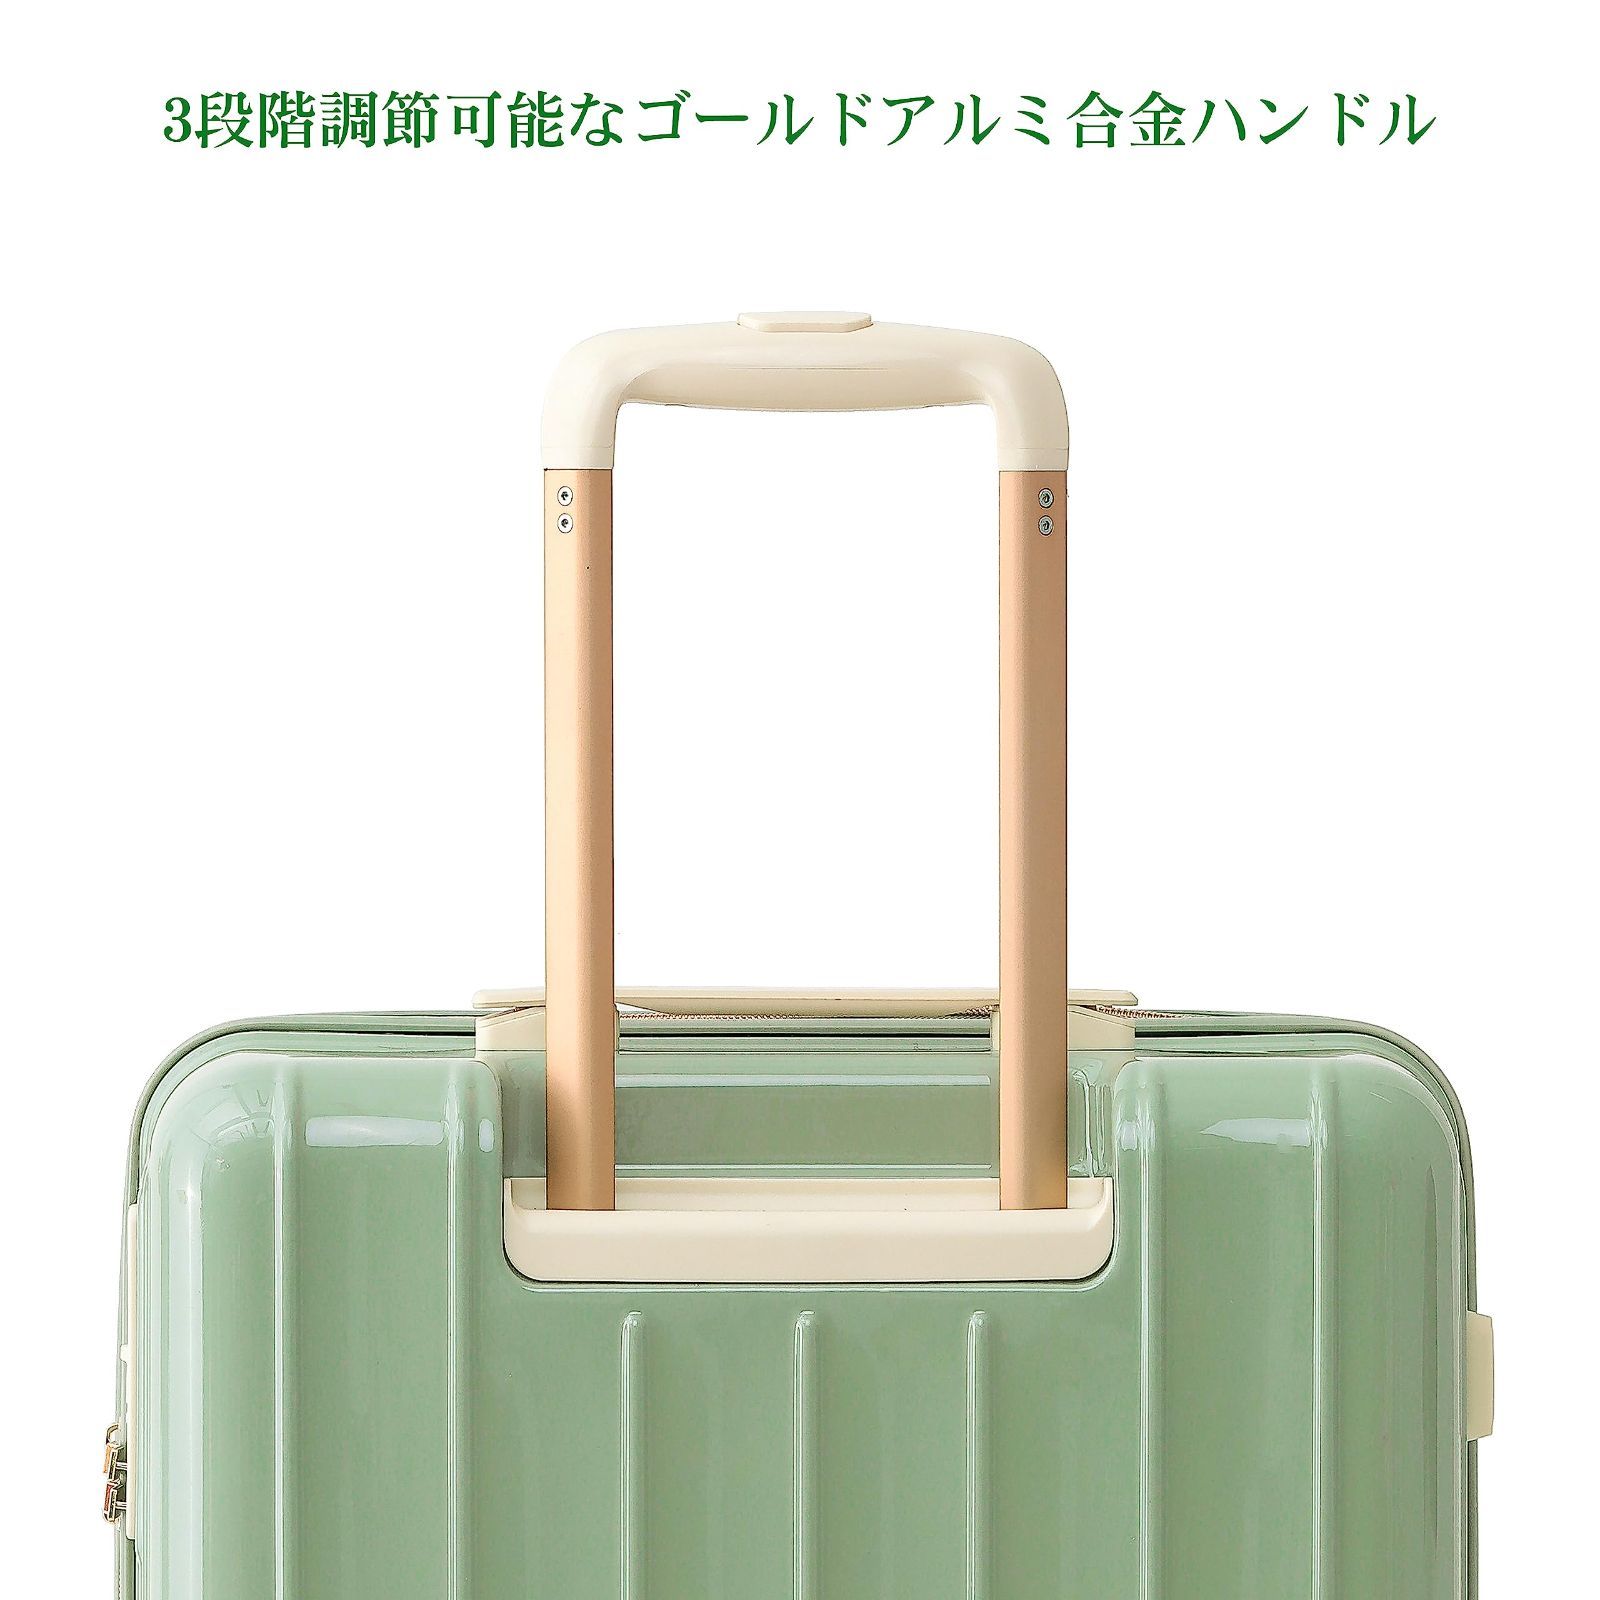 スーツケース mサイズ 3?5泊以上 軽量 かわいい おしゃれ 可愛い